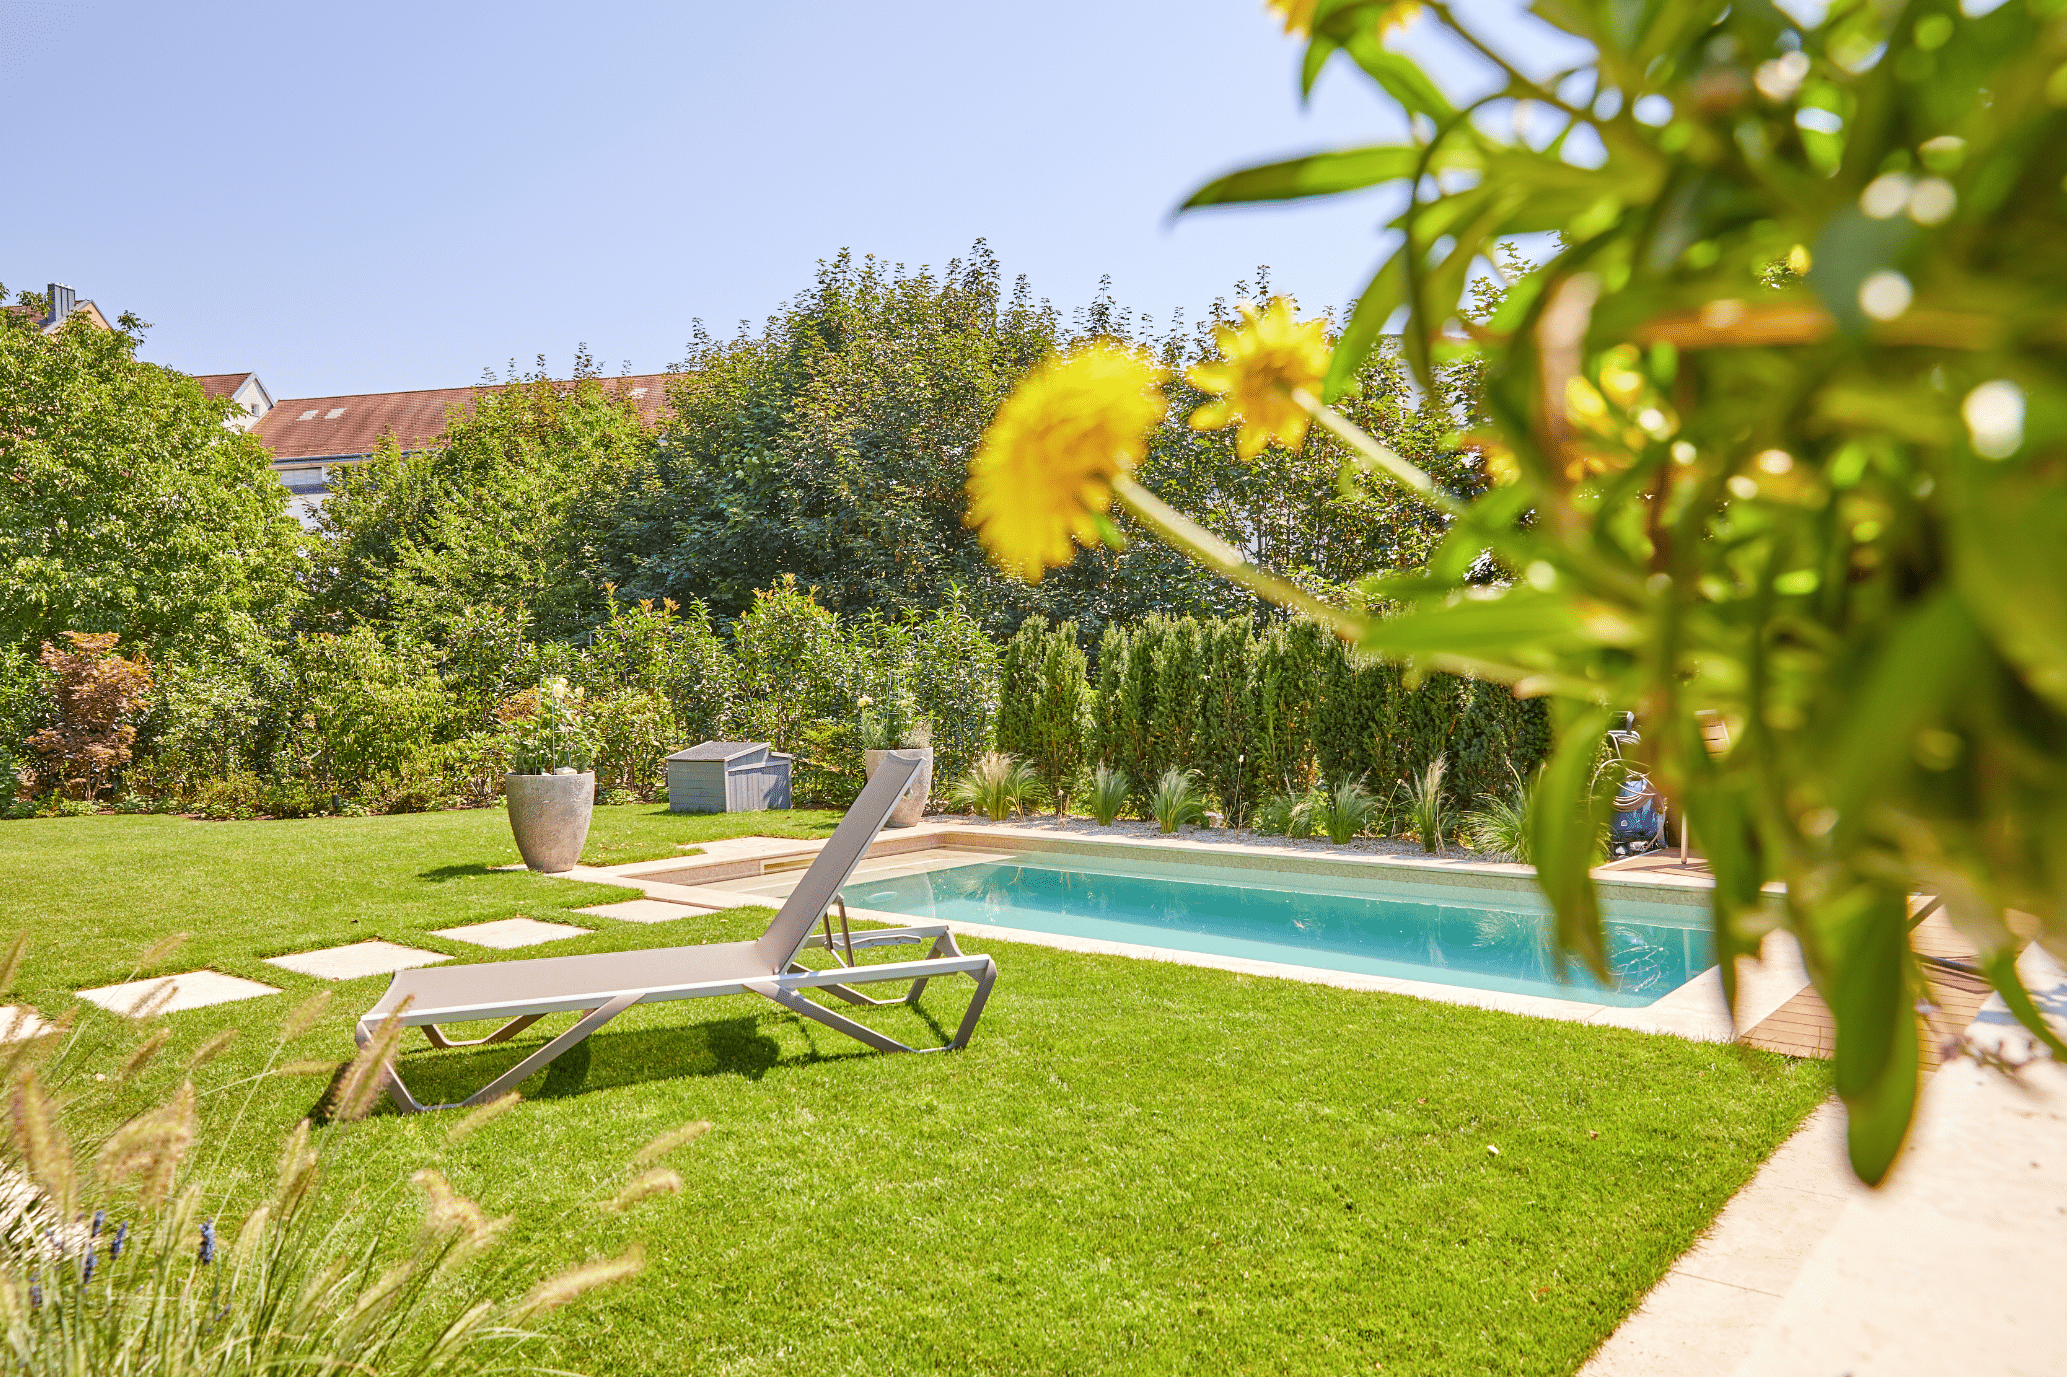 Friedrich Reitinger Schwimmbad und Wellness zeigt einen gepflegten Garten mit einem in den Boden eingelassenen, rechteckigen Pool mit einer gefliesten Poolumrandung und einer Sonnenliege.